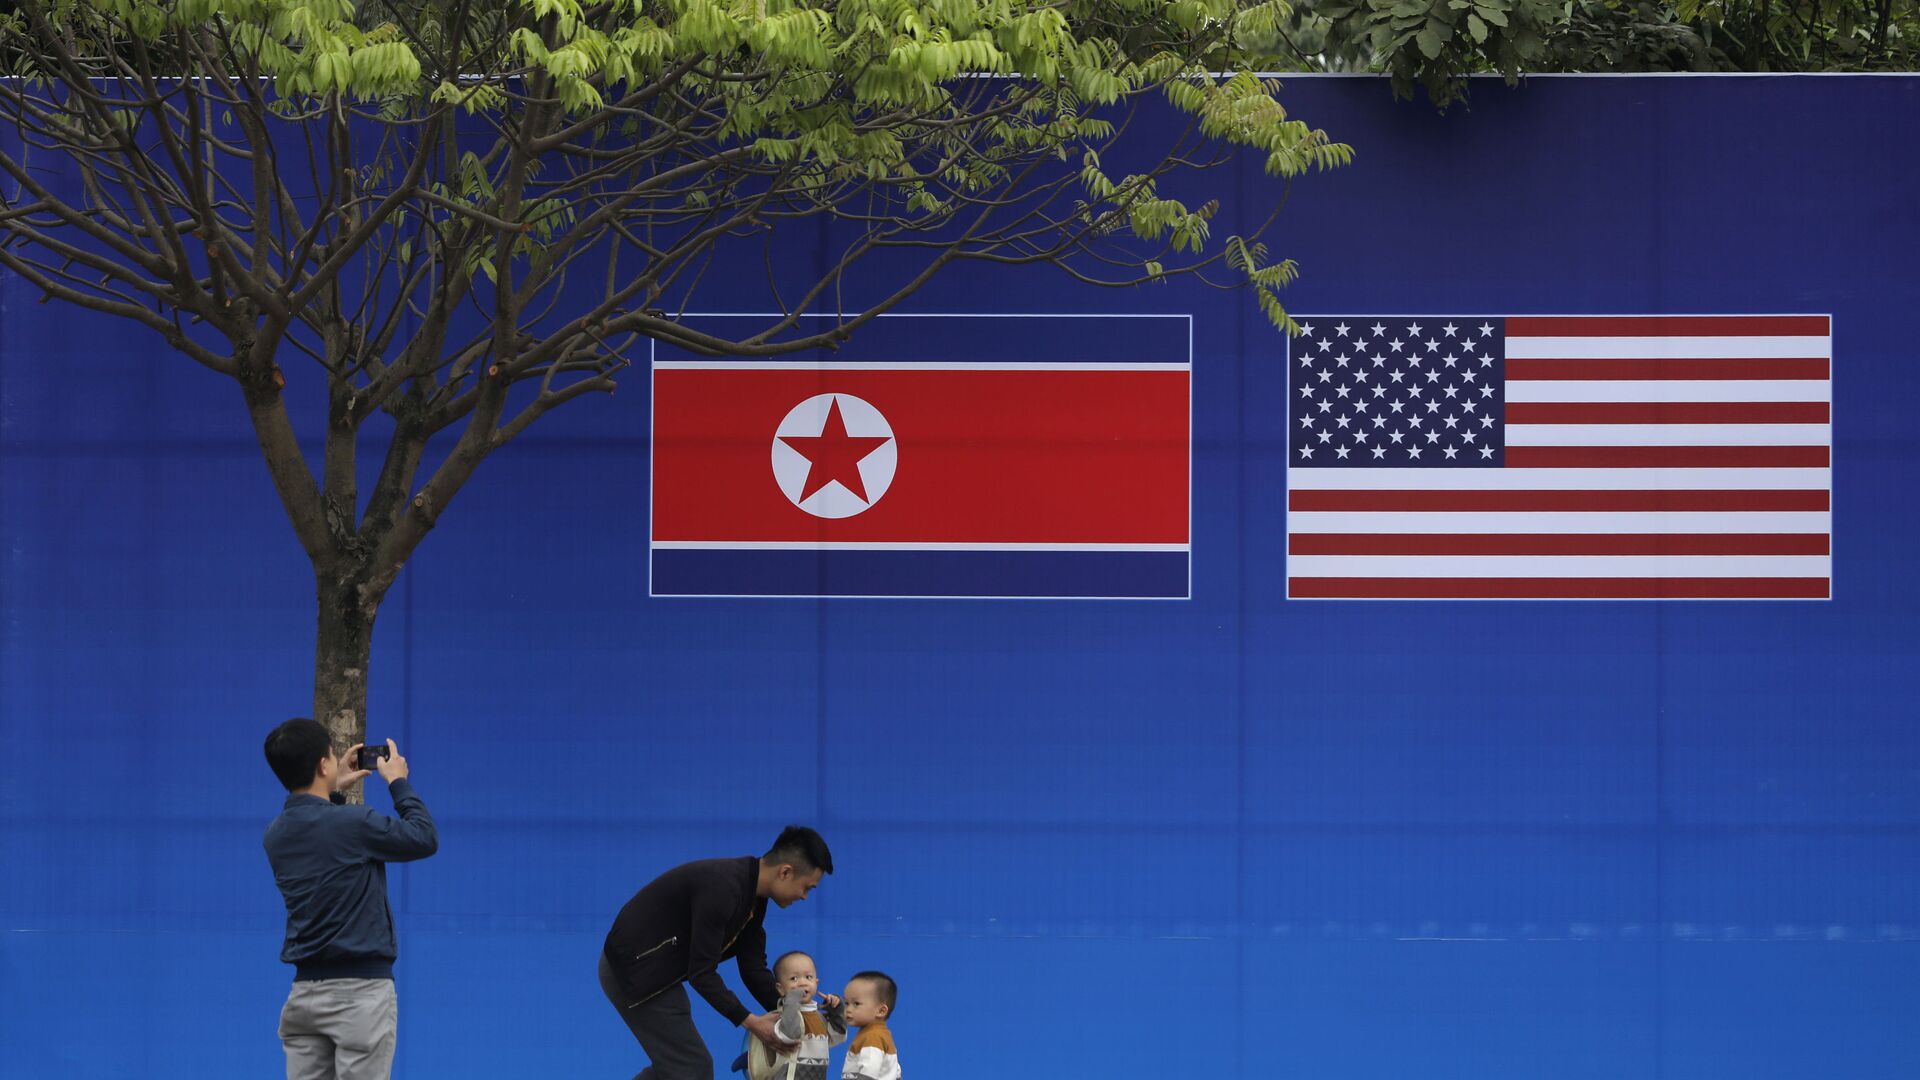 Cư dân Hà Nội tạo dáng trước hình ảnh lá cờ Bắc Triều Tiên và Mỹ trong những ngày diễn ra hội nghị thượng đỉnh Bắc Triều Tiên-Mỹ tại Hà Nội - Sputnik Việt Nam, 1920, 22.05.2022